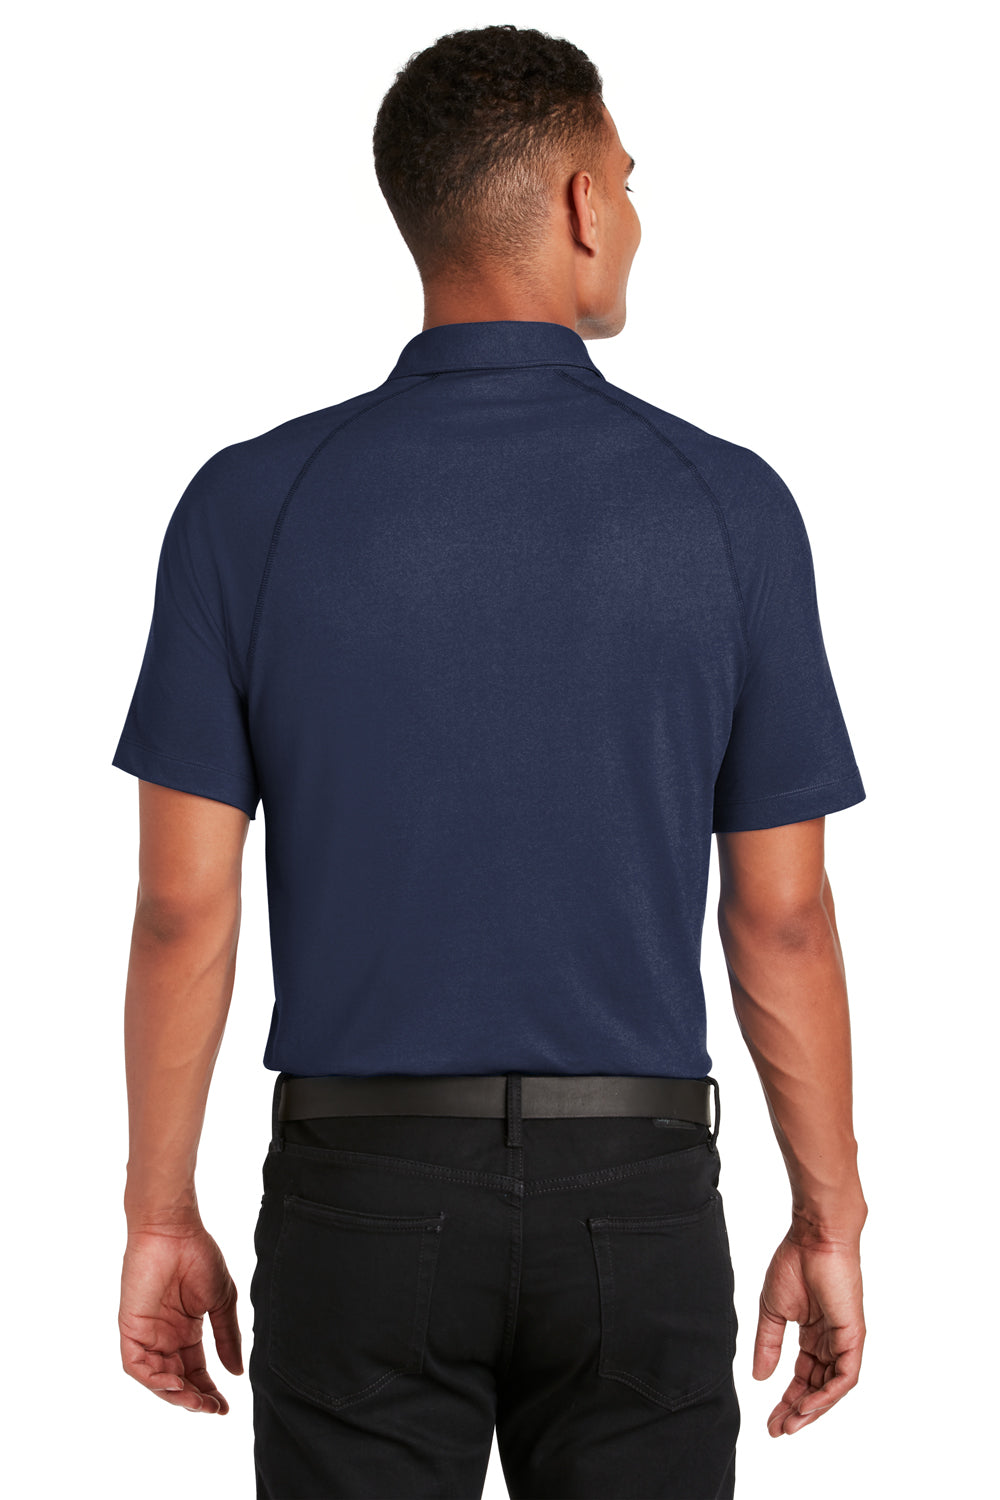 Ogio OG126 Mens Onyx Moisture Wicking Short Sleeve Polo Shirt Navy Blue Back